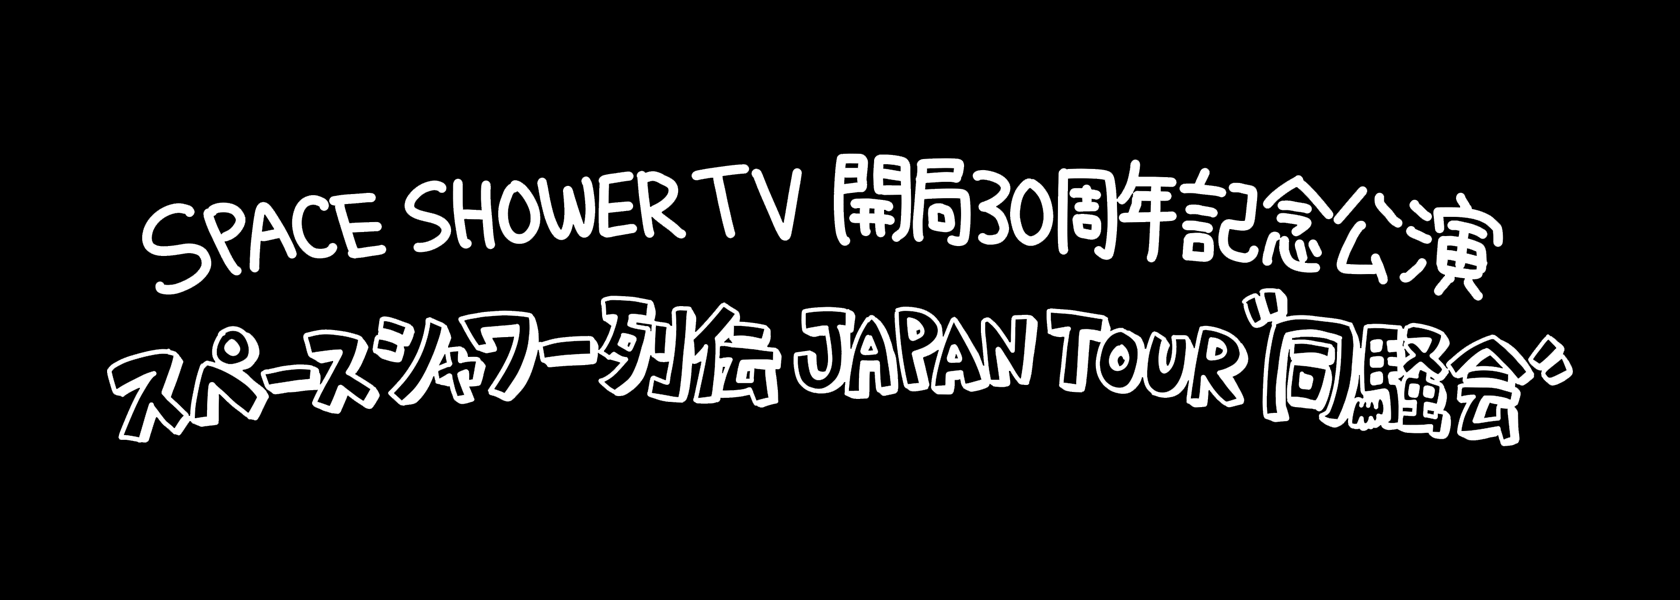 スペースシャワー列伝 SPACE SHOWER TV 開局30周年記念公演<br> スペースシャワー列伝 JAPAN TOUR “同騒会”